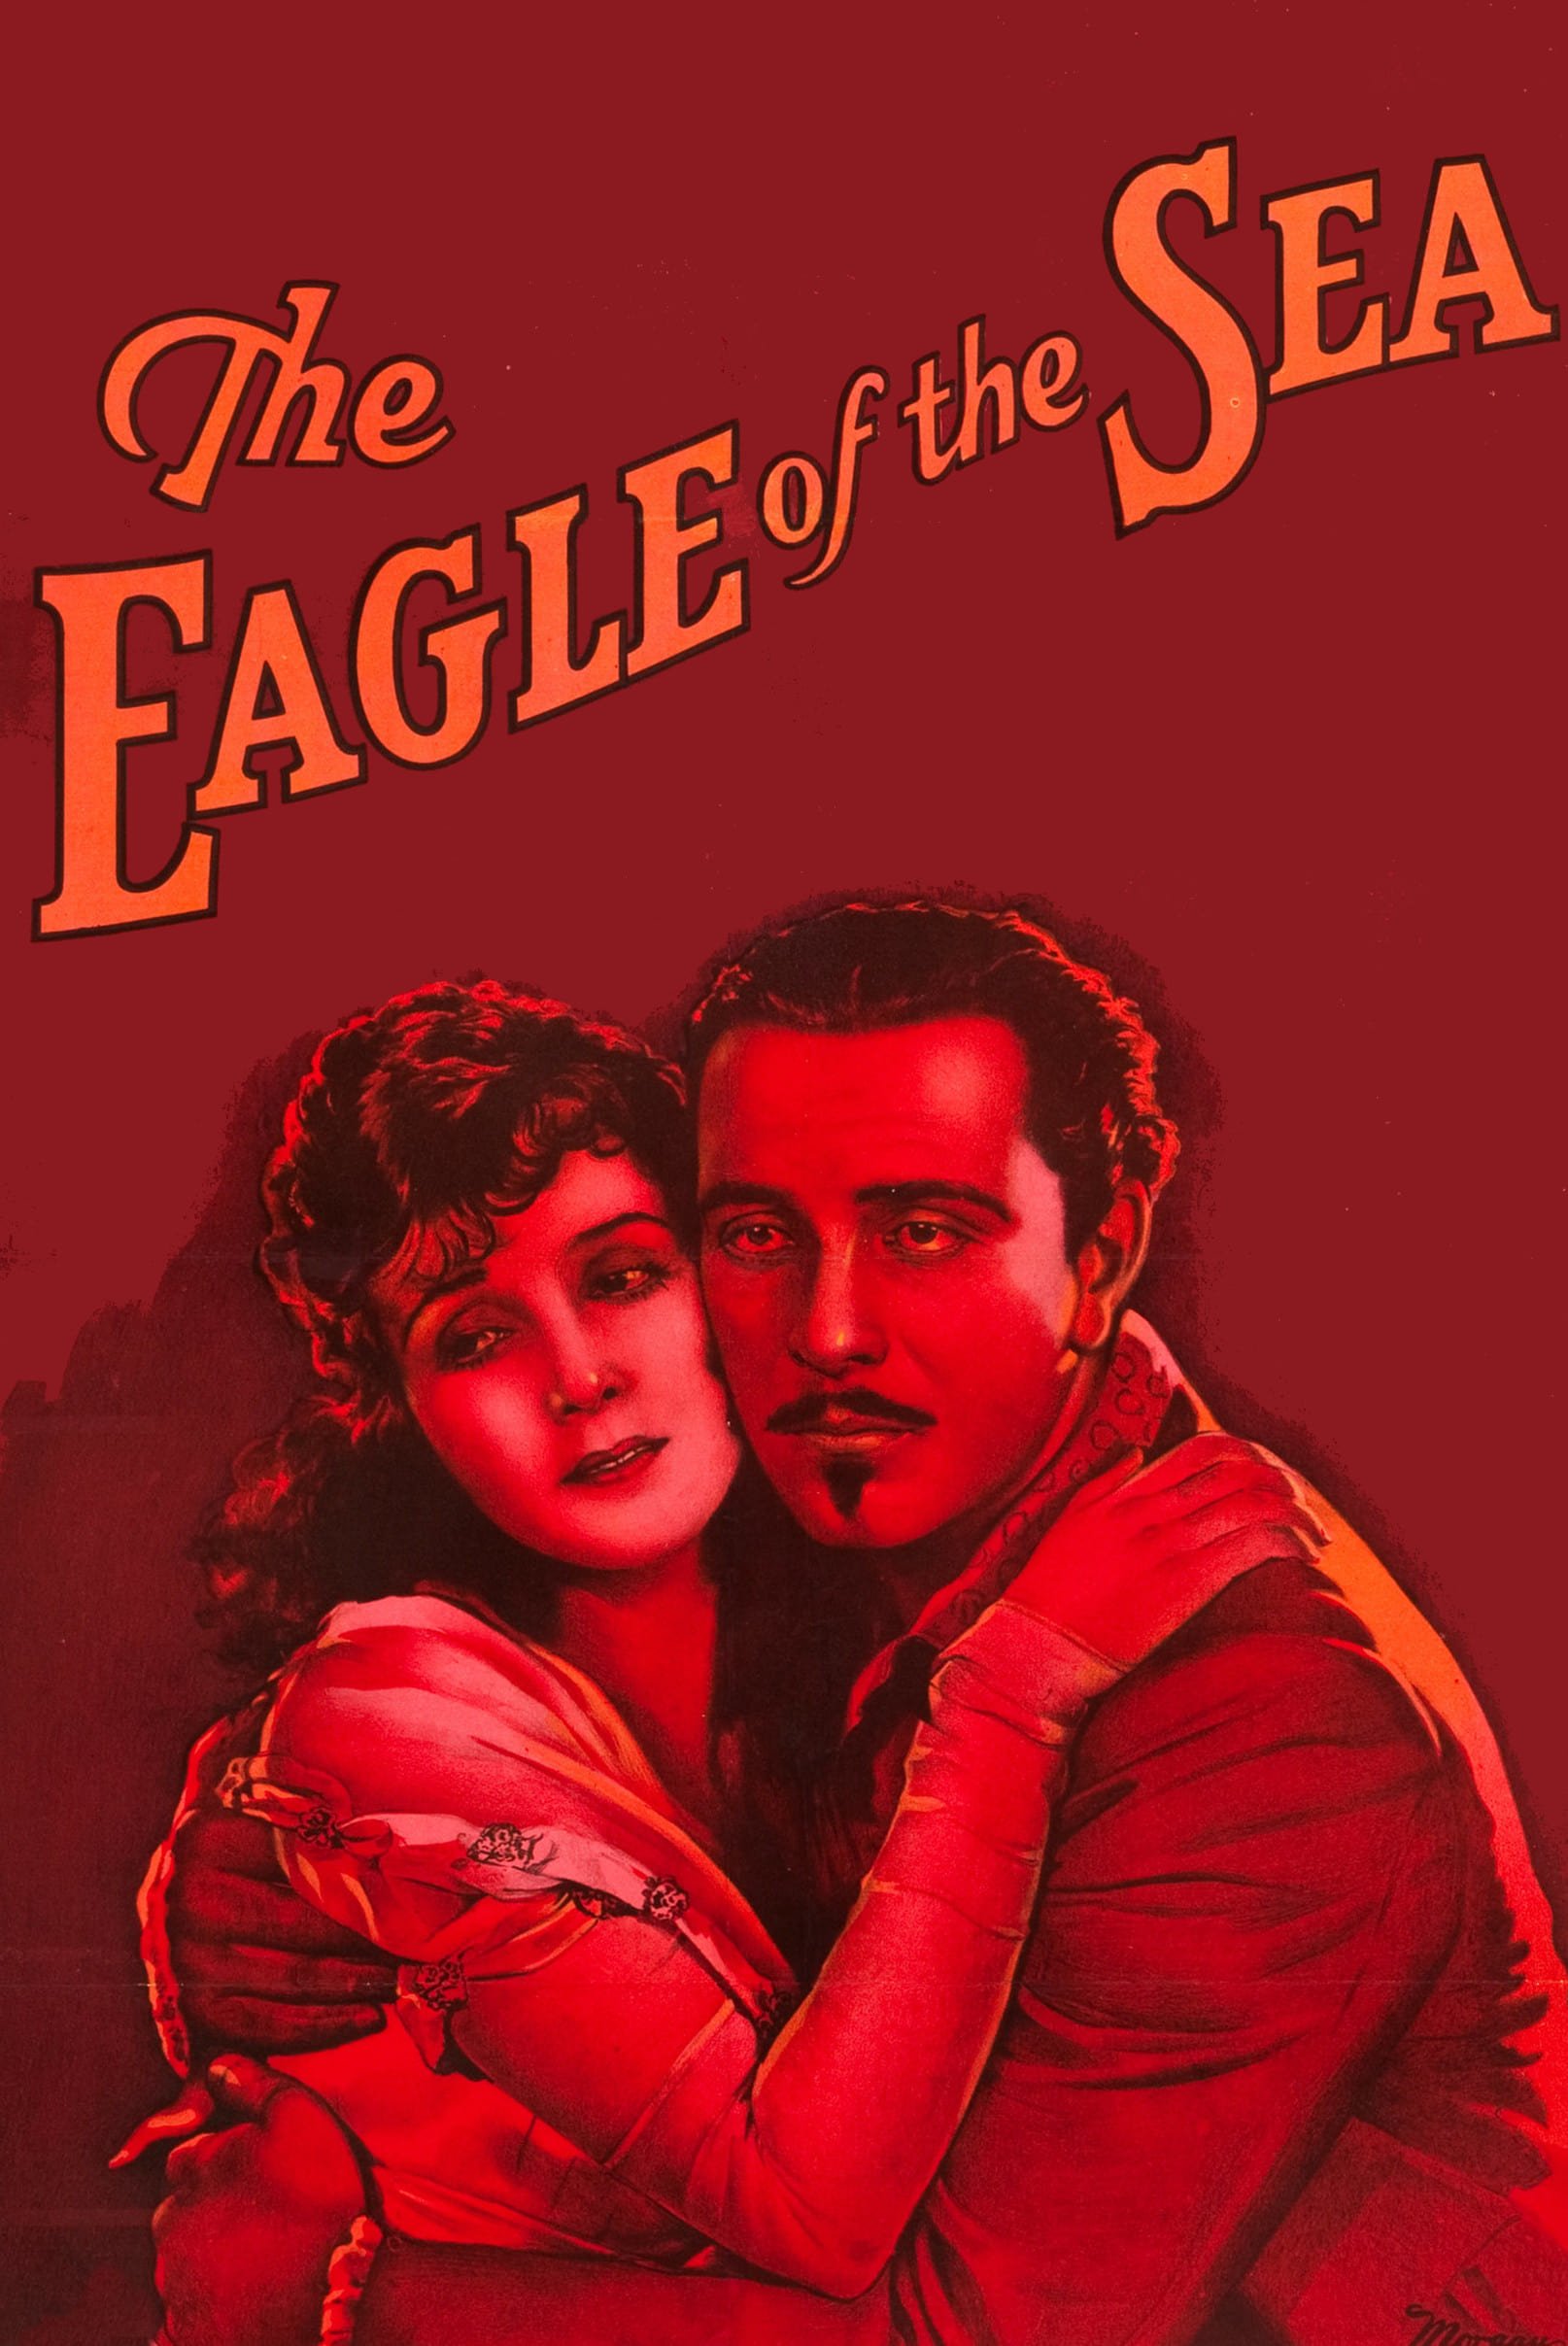 The Eagle of the Sea (1926)